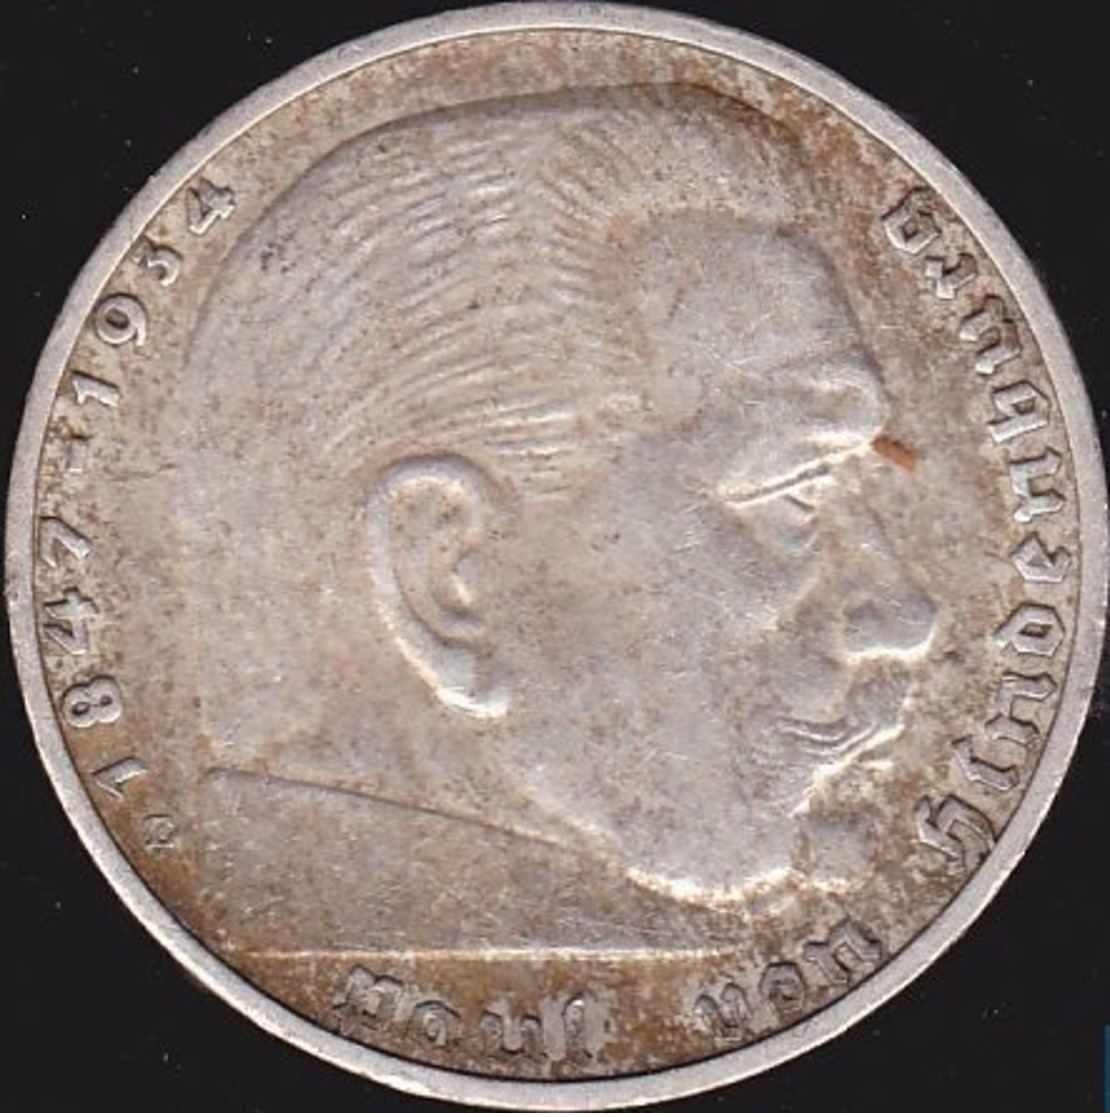 Allemange, Troisième Reich 2 Reichsmark 1936 E - Argent /silver - 2 Reichsmark